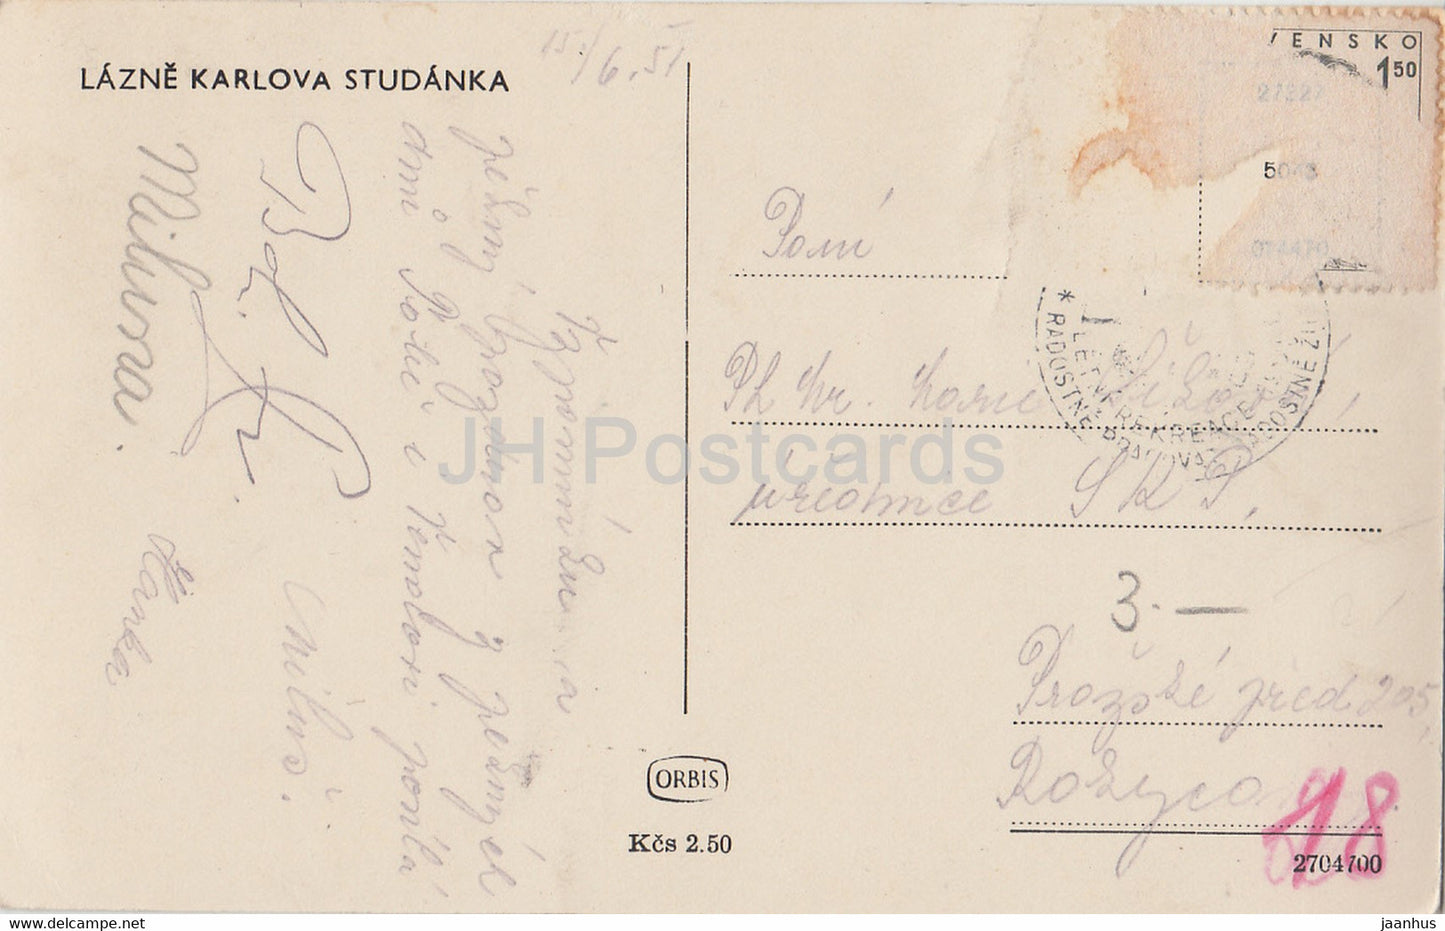 Lazne Karlova Studanka - old postcard - 1951 - Czechoslovakia - Czech Republic - used